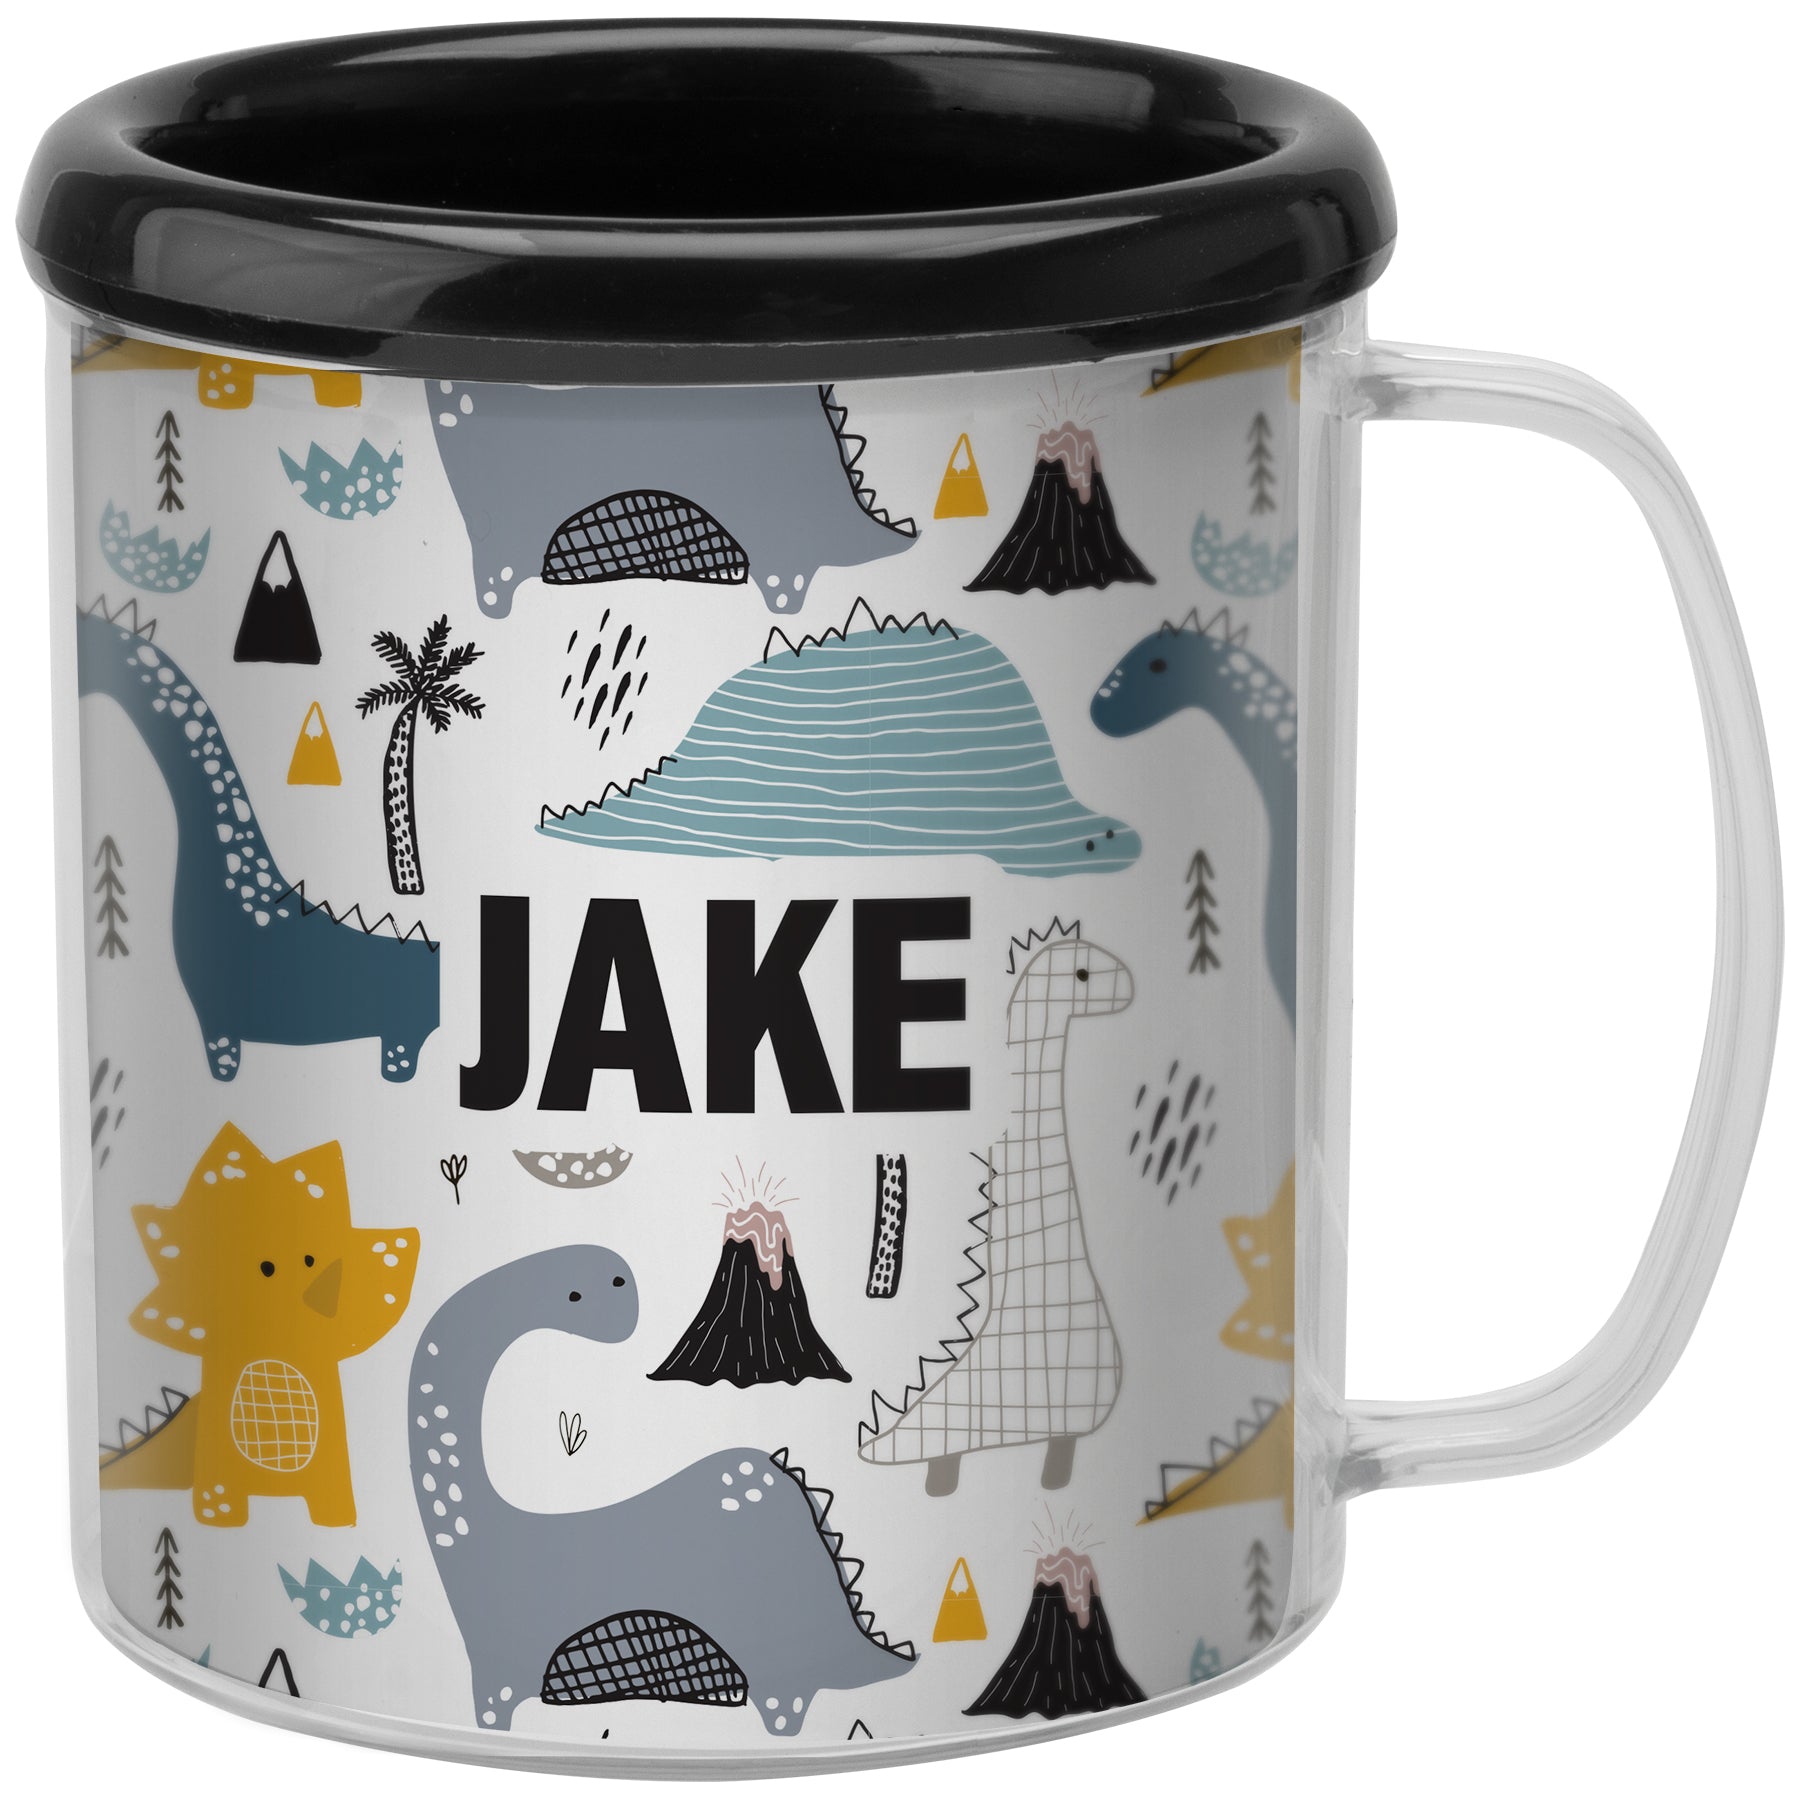 Make & Take Mug